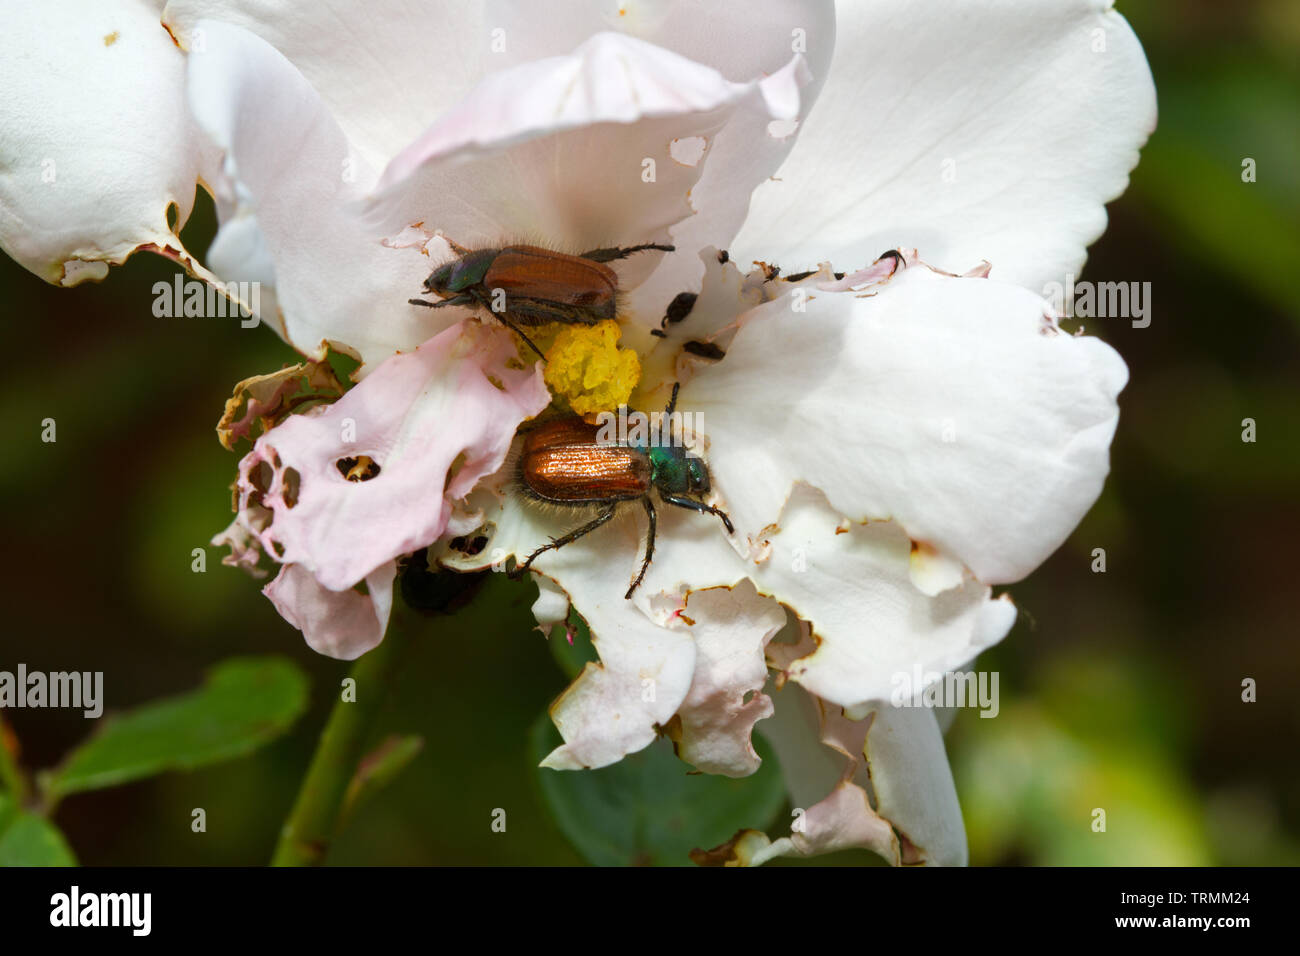 Jardín Chafers, también conocido como Jardín de follaje escarabajos, dañando los pétalos de rosa blanca Foto de stock